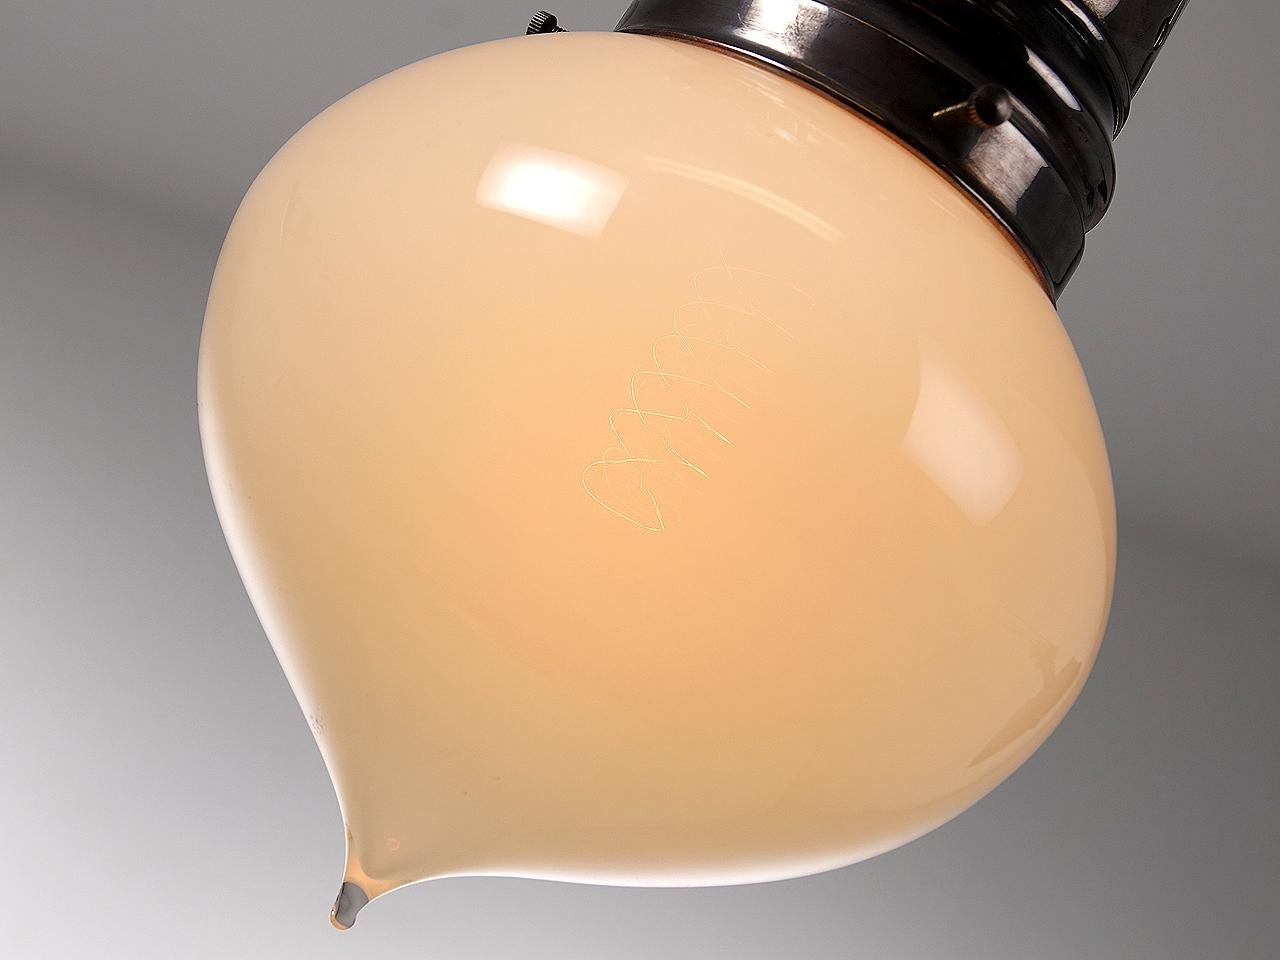 Diese frühen, eleganten, mundgeblasenen Lampenschirme sind aus Vaselineglas. Sie haben ein schönes, gleichmäßiges und warmes Licht ohne Glühfadenglanz. Die Aufsätze sind hohe perforierte Kupferhalterungen im Stil der Gas-Ära, die exklusiv für diesen